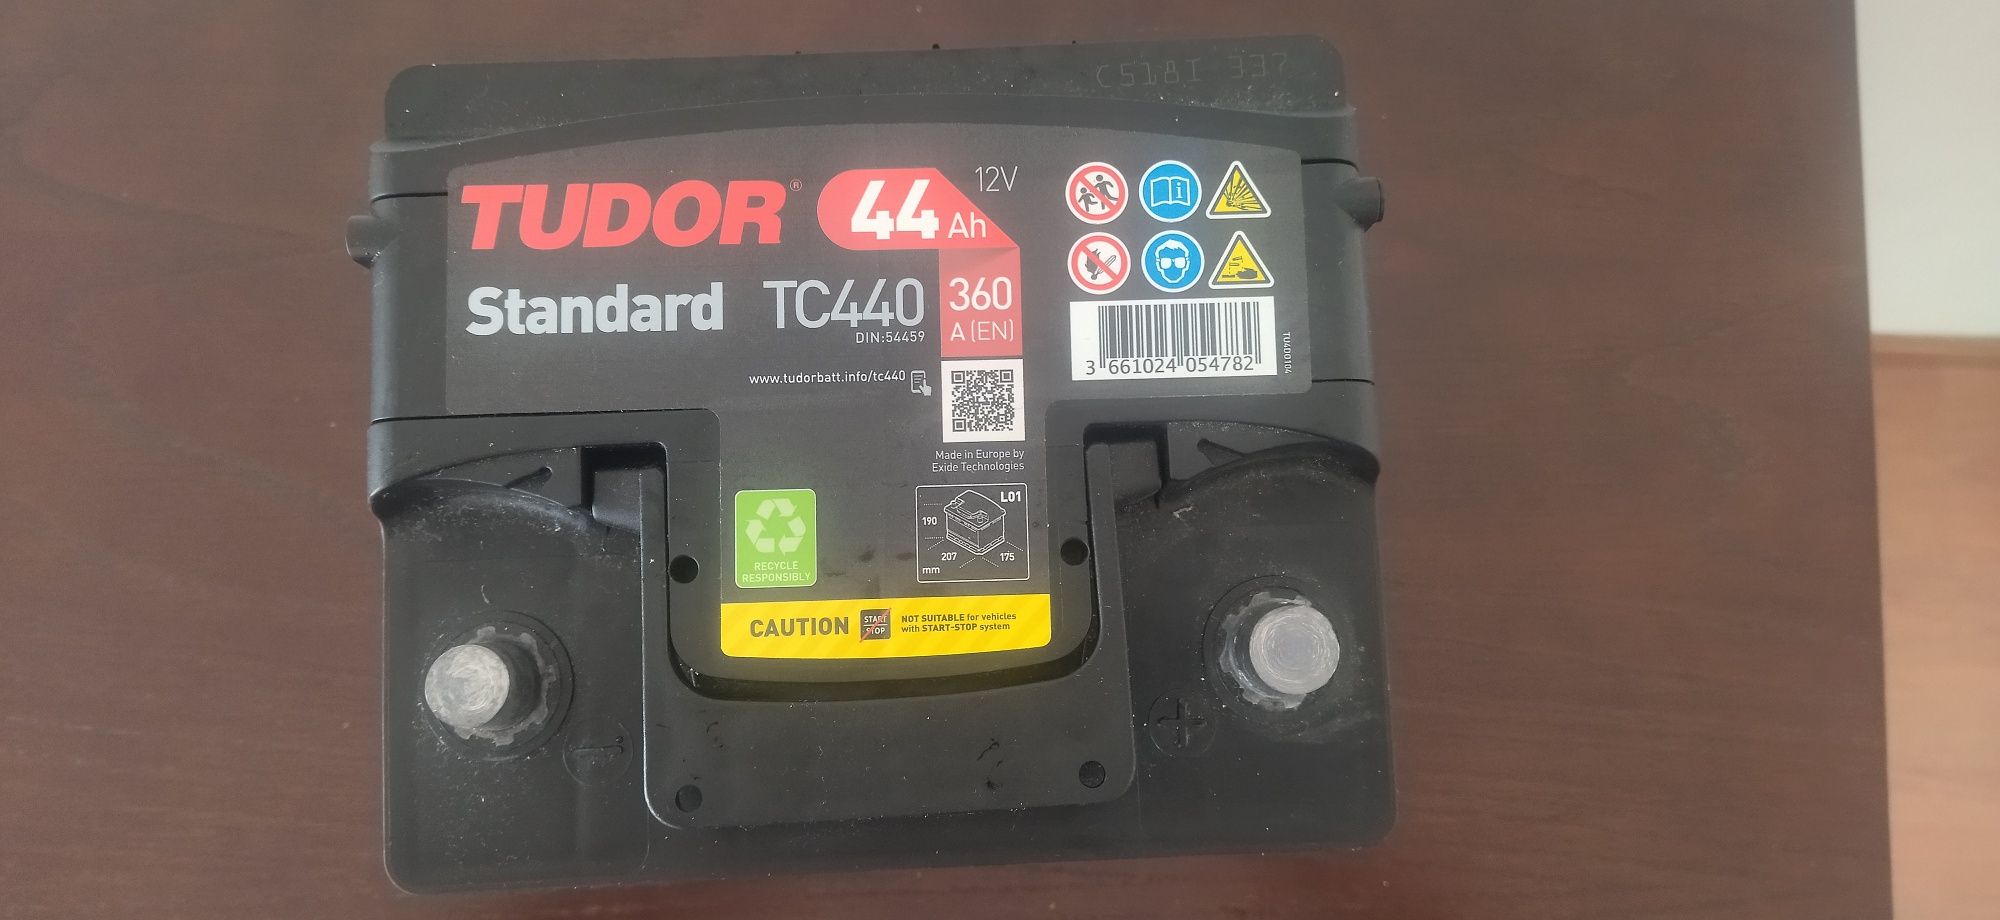 Bateria Tudor Standard TC440 44Ah 12v